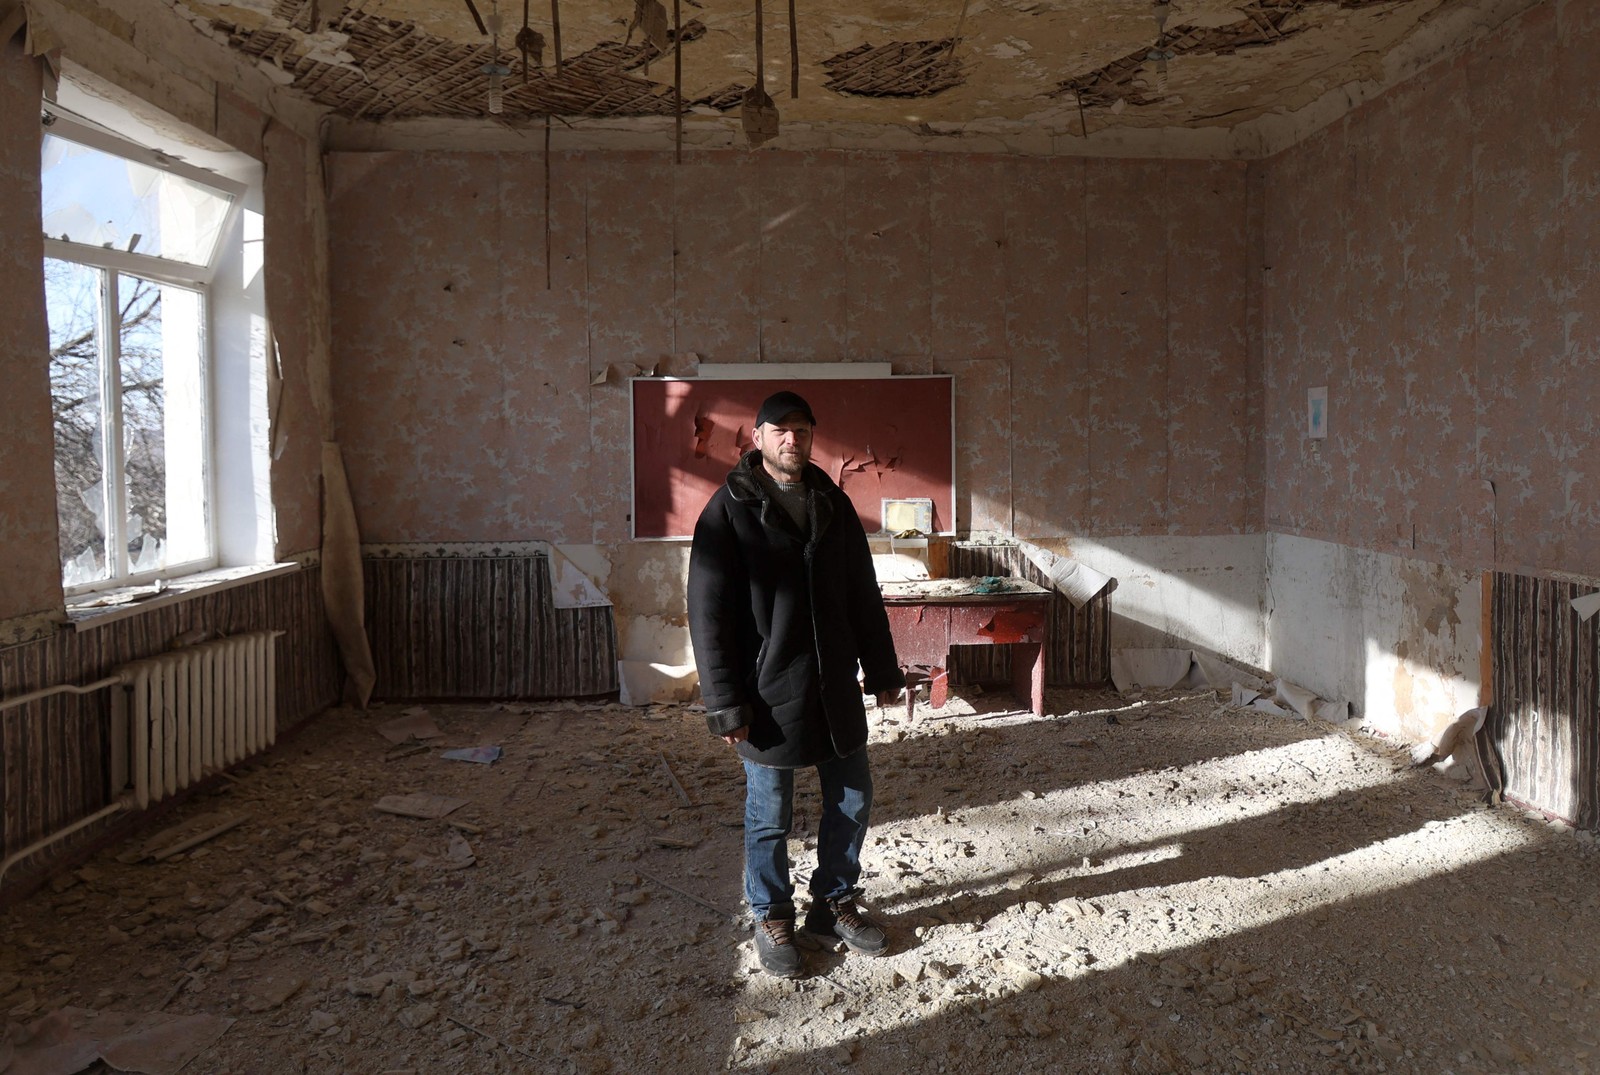 Apesar das dificuldades, Oleksander dizia a si mesmo que 'era melhor dar aulas presenciais' — Foto: Anatolii Stepanov / AFP